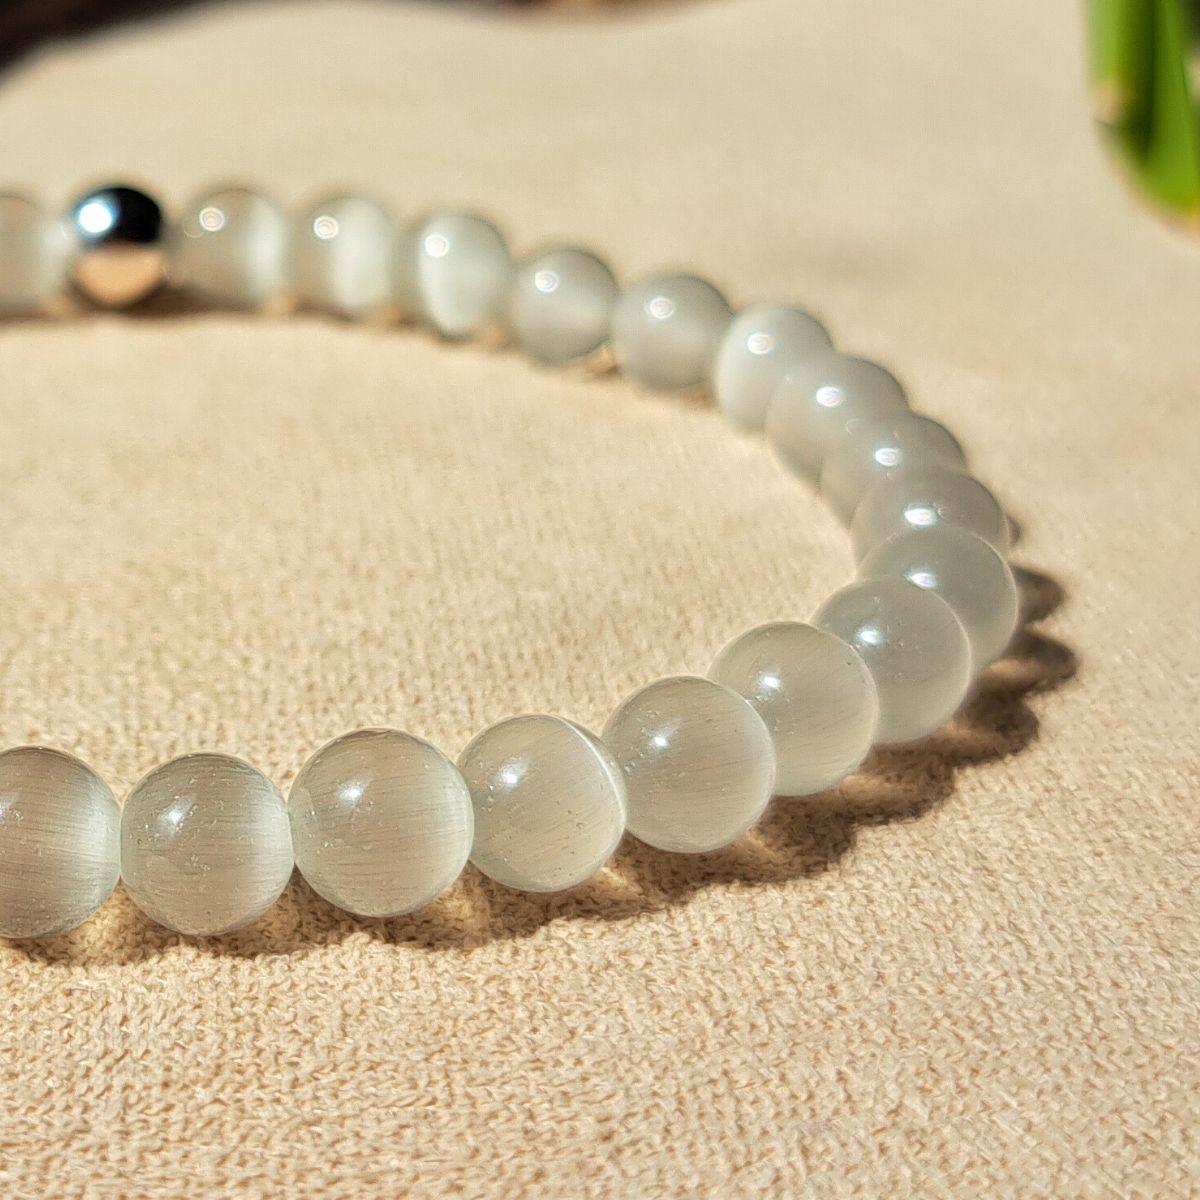 Selenite crystal bracelet close-up.